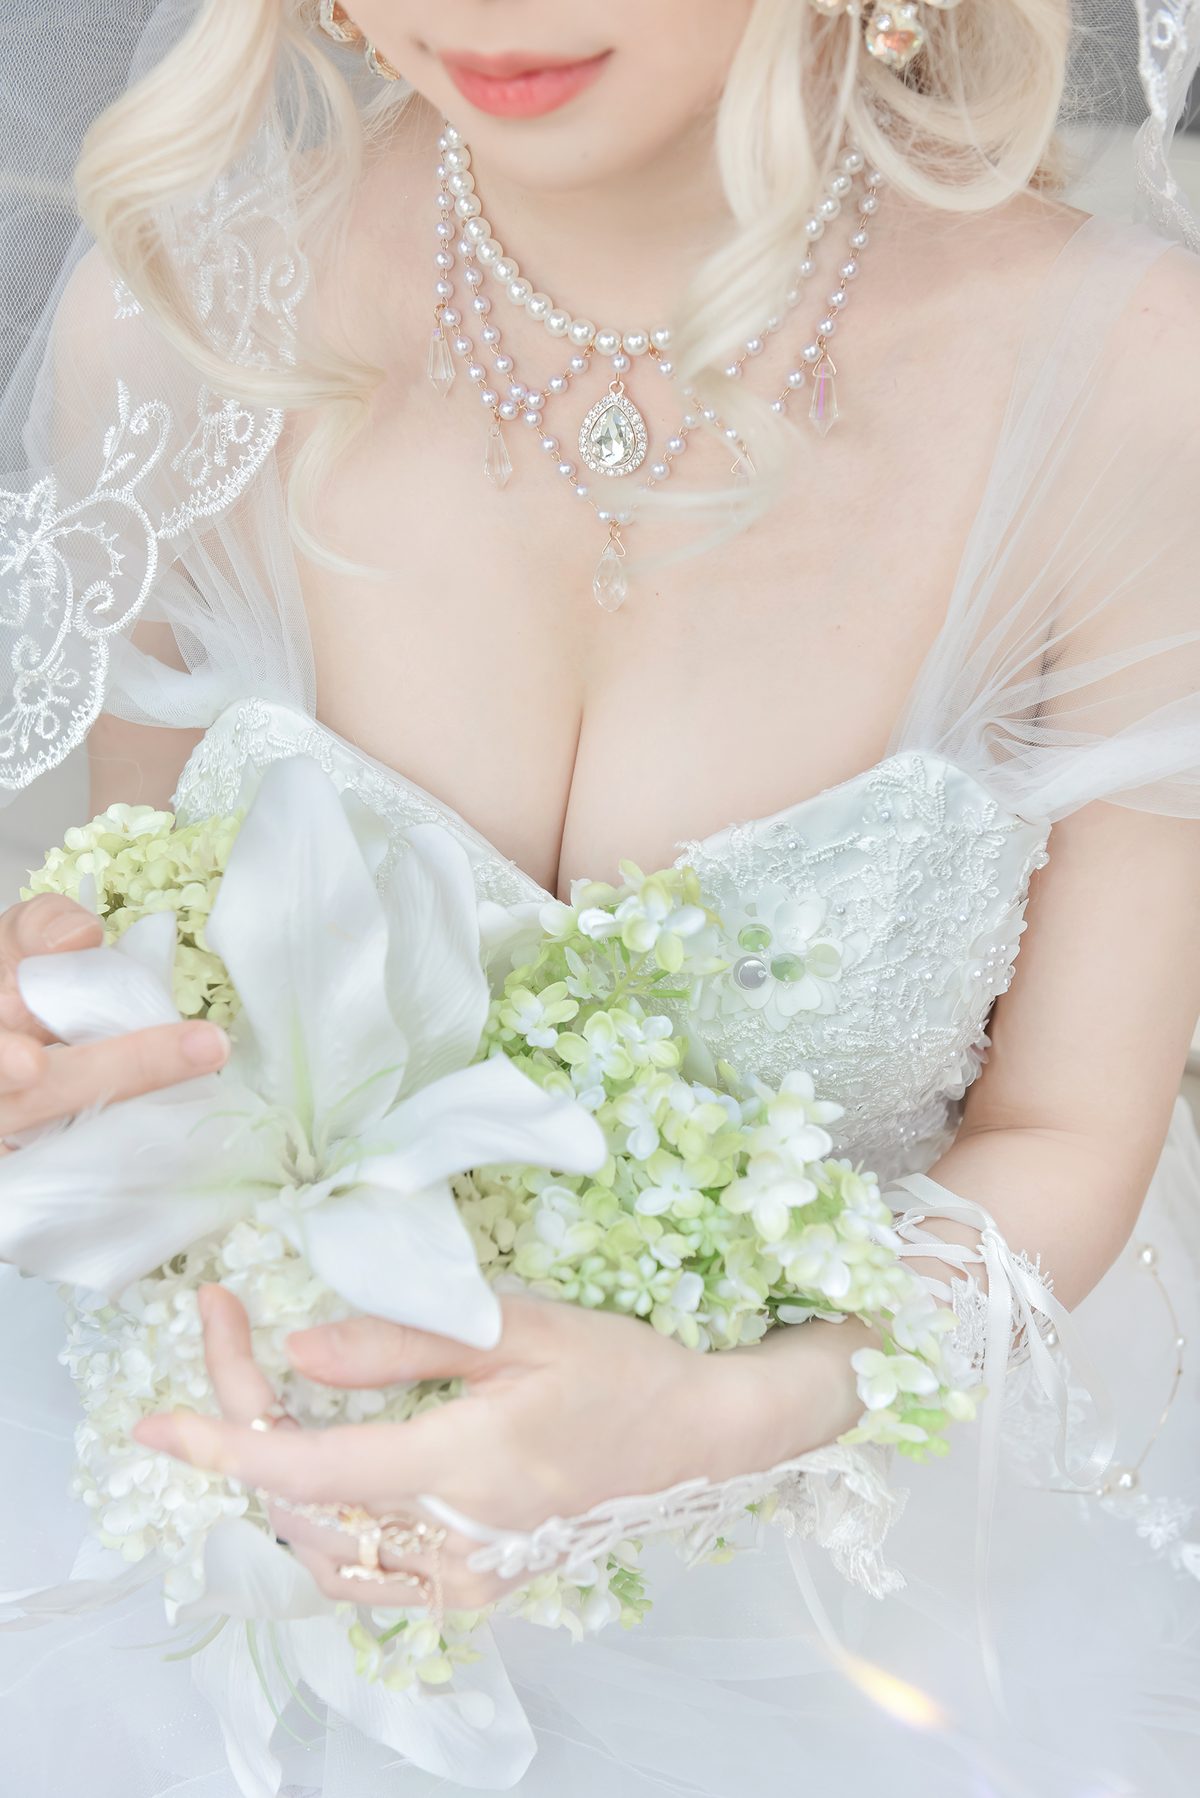 Coser@Ely_eee ElyEE子 Bride And Lingerie 0055 2569163578.jpg